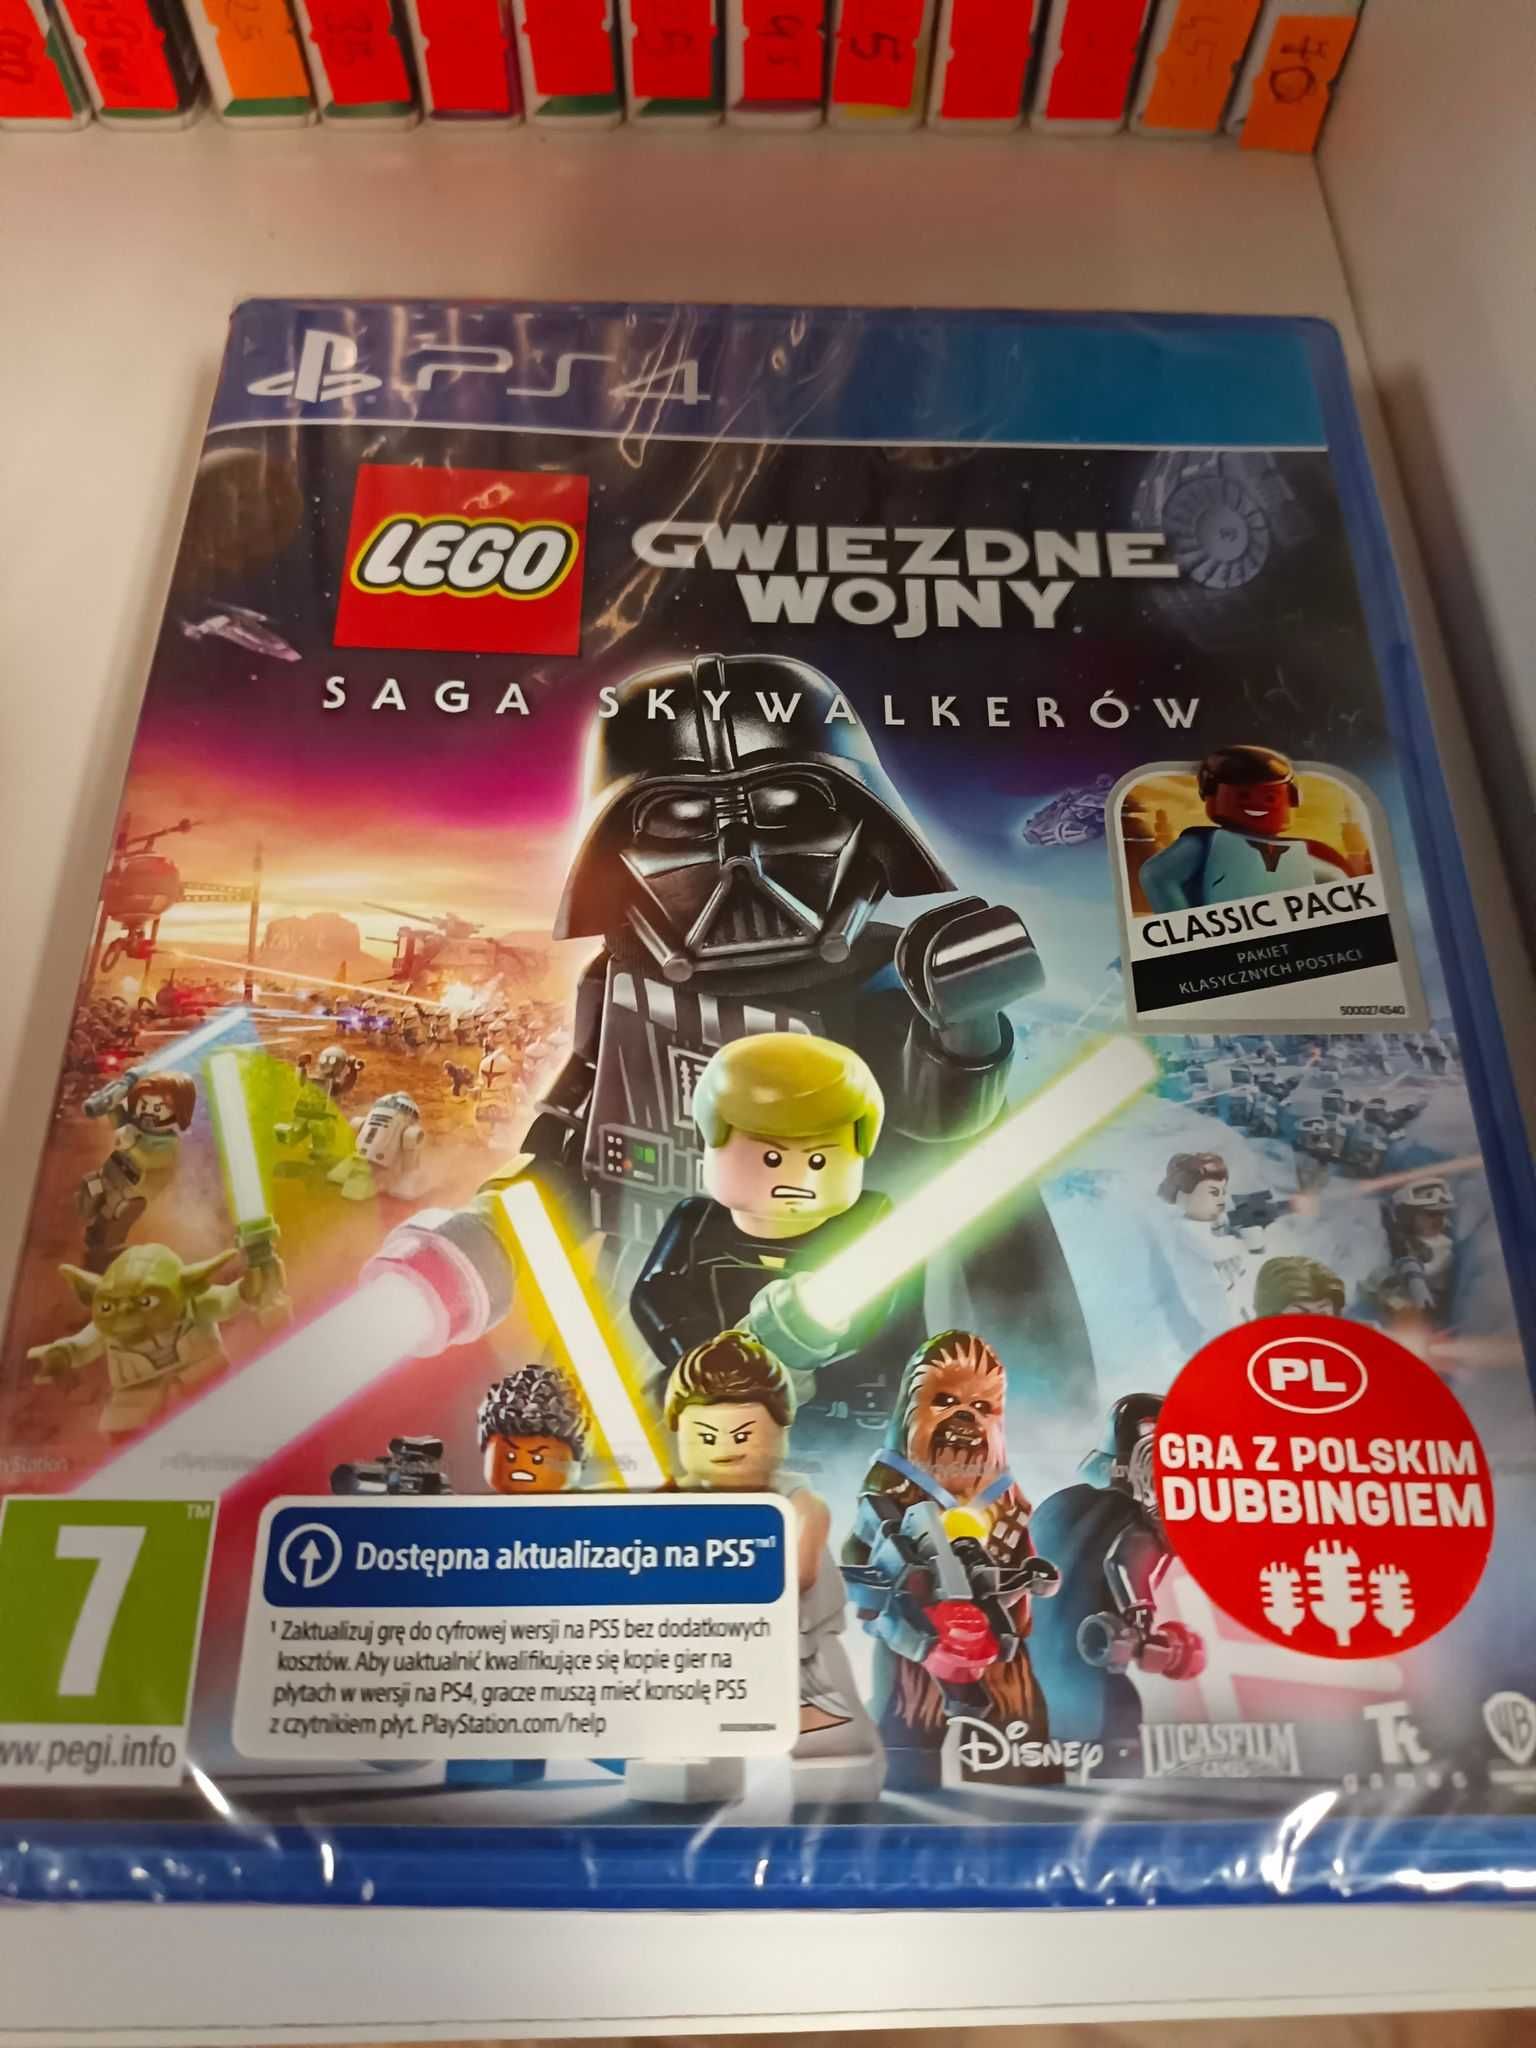 LEGO Gwiezdne wojny: Saga Skywalkerów PS4 Nowa!  Sklep Wysyłka Wymiana